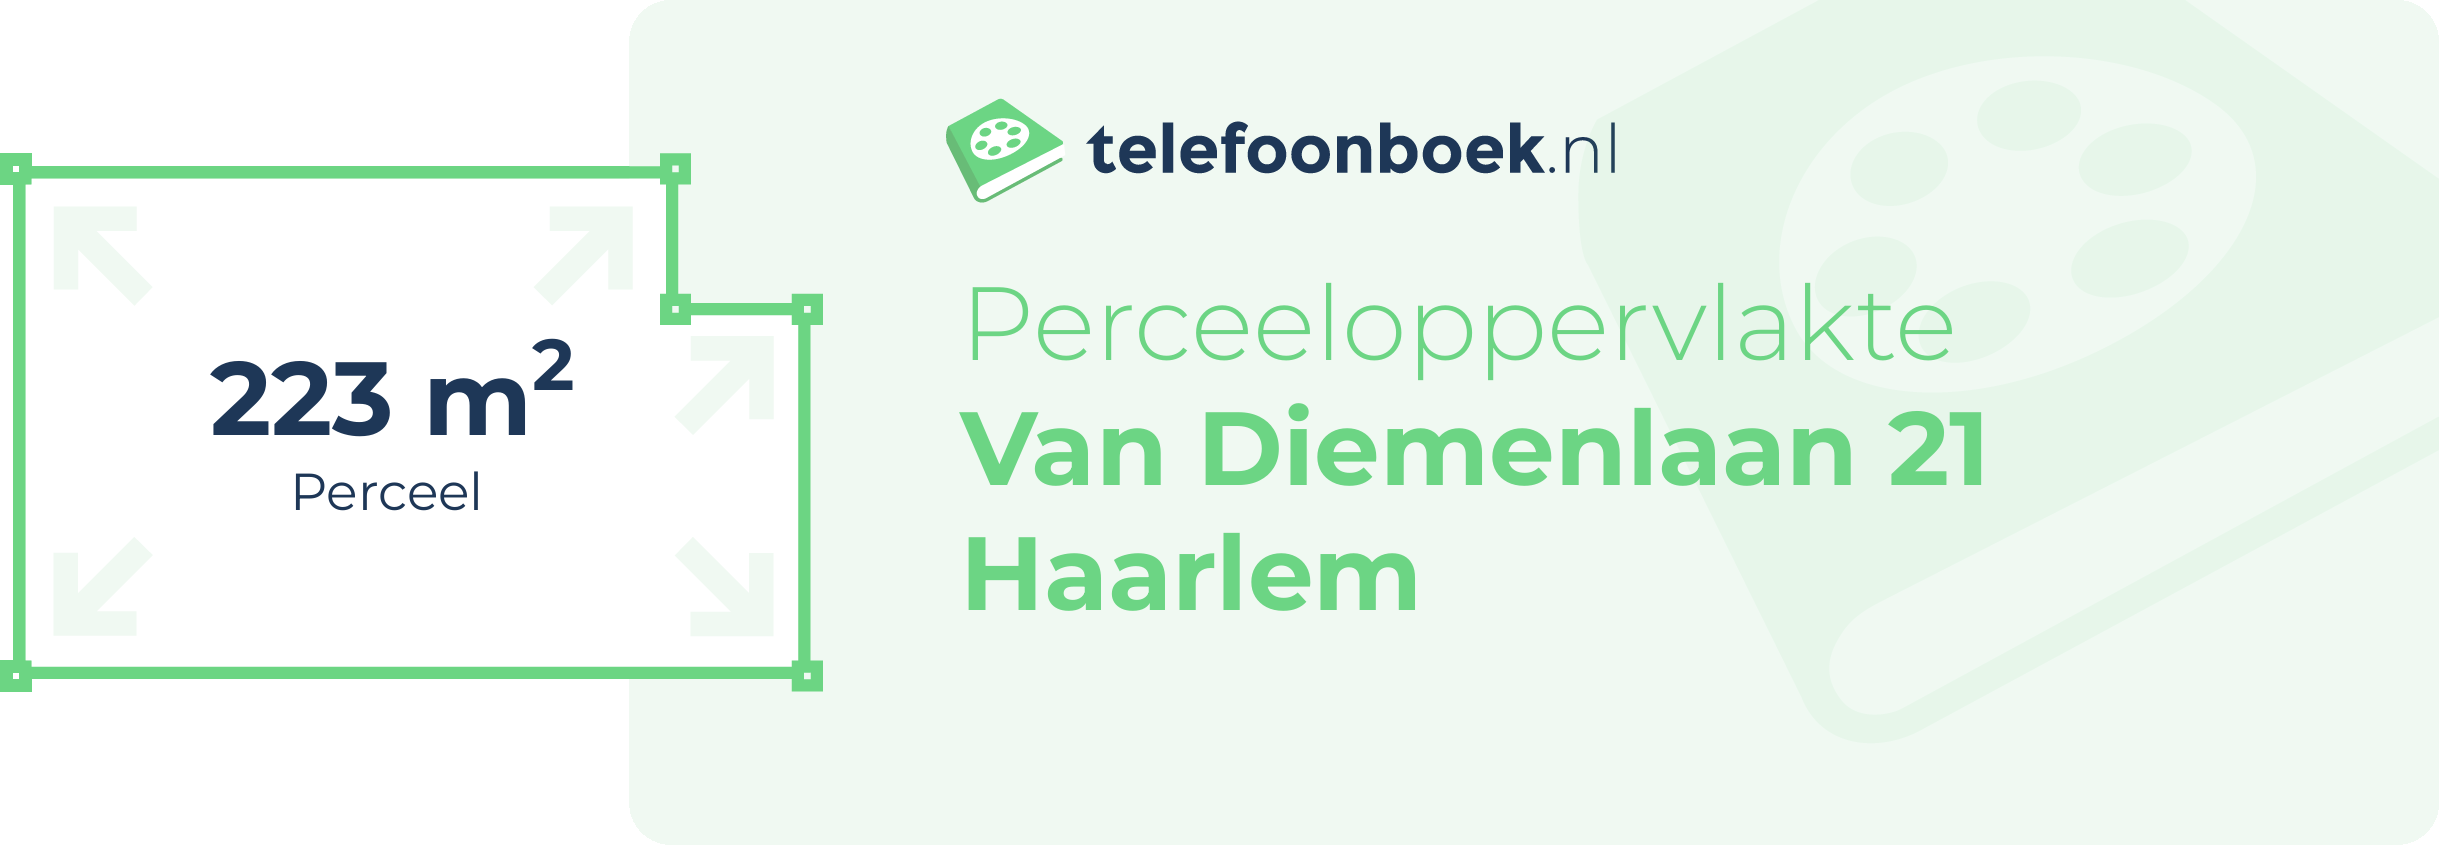 Perceeloppervlakte Van Diemenlaan 21 Haarlem